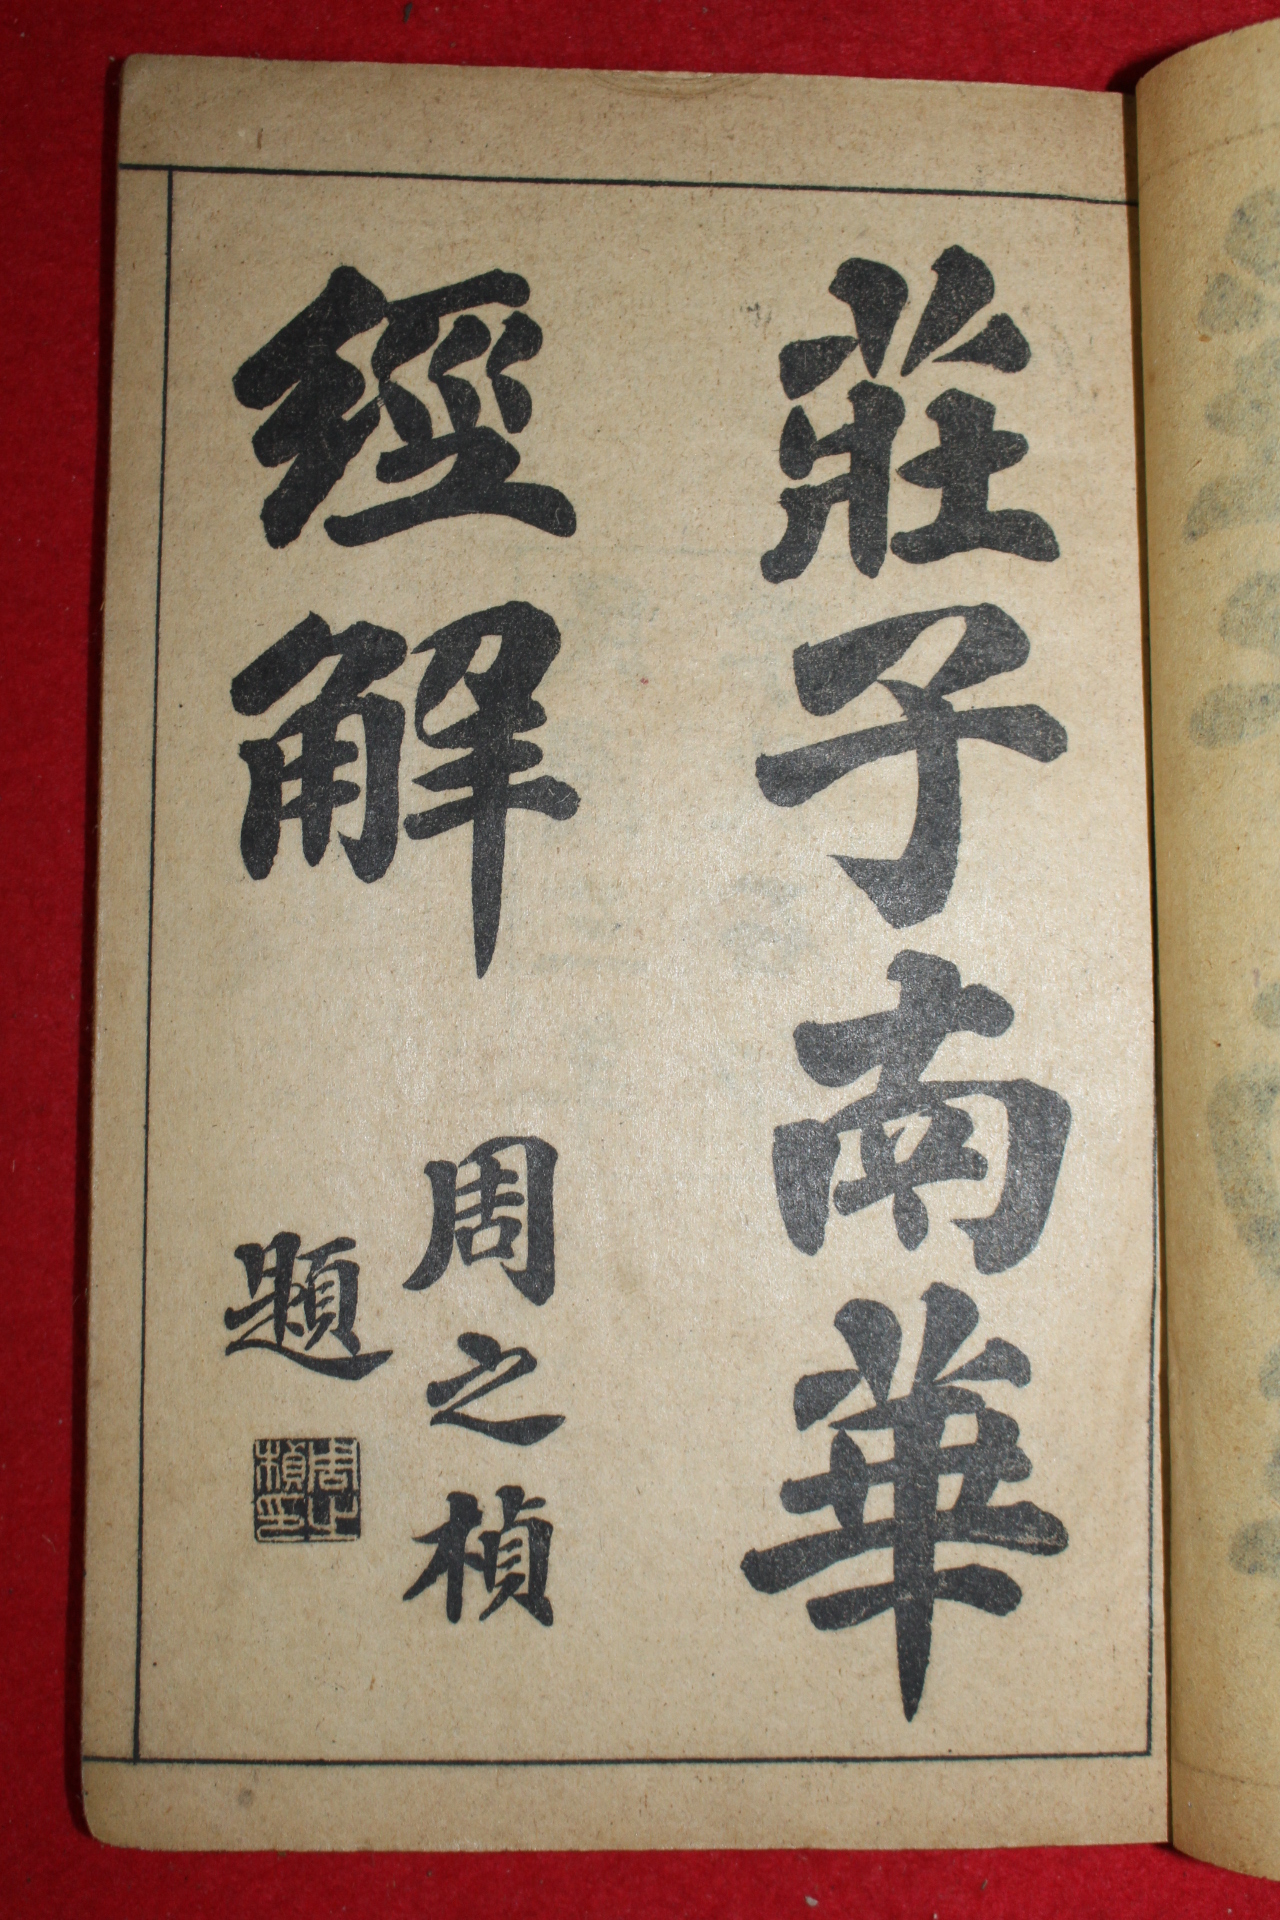 1914년(民國3年) 중국간행 장자남화경(莊子南華經) 3책